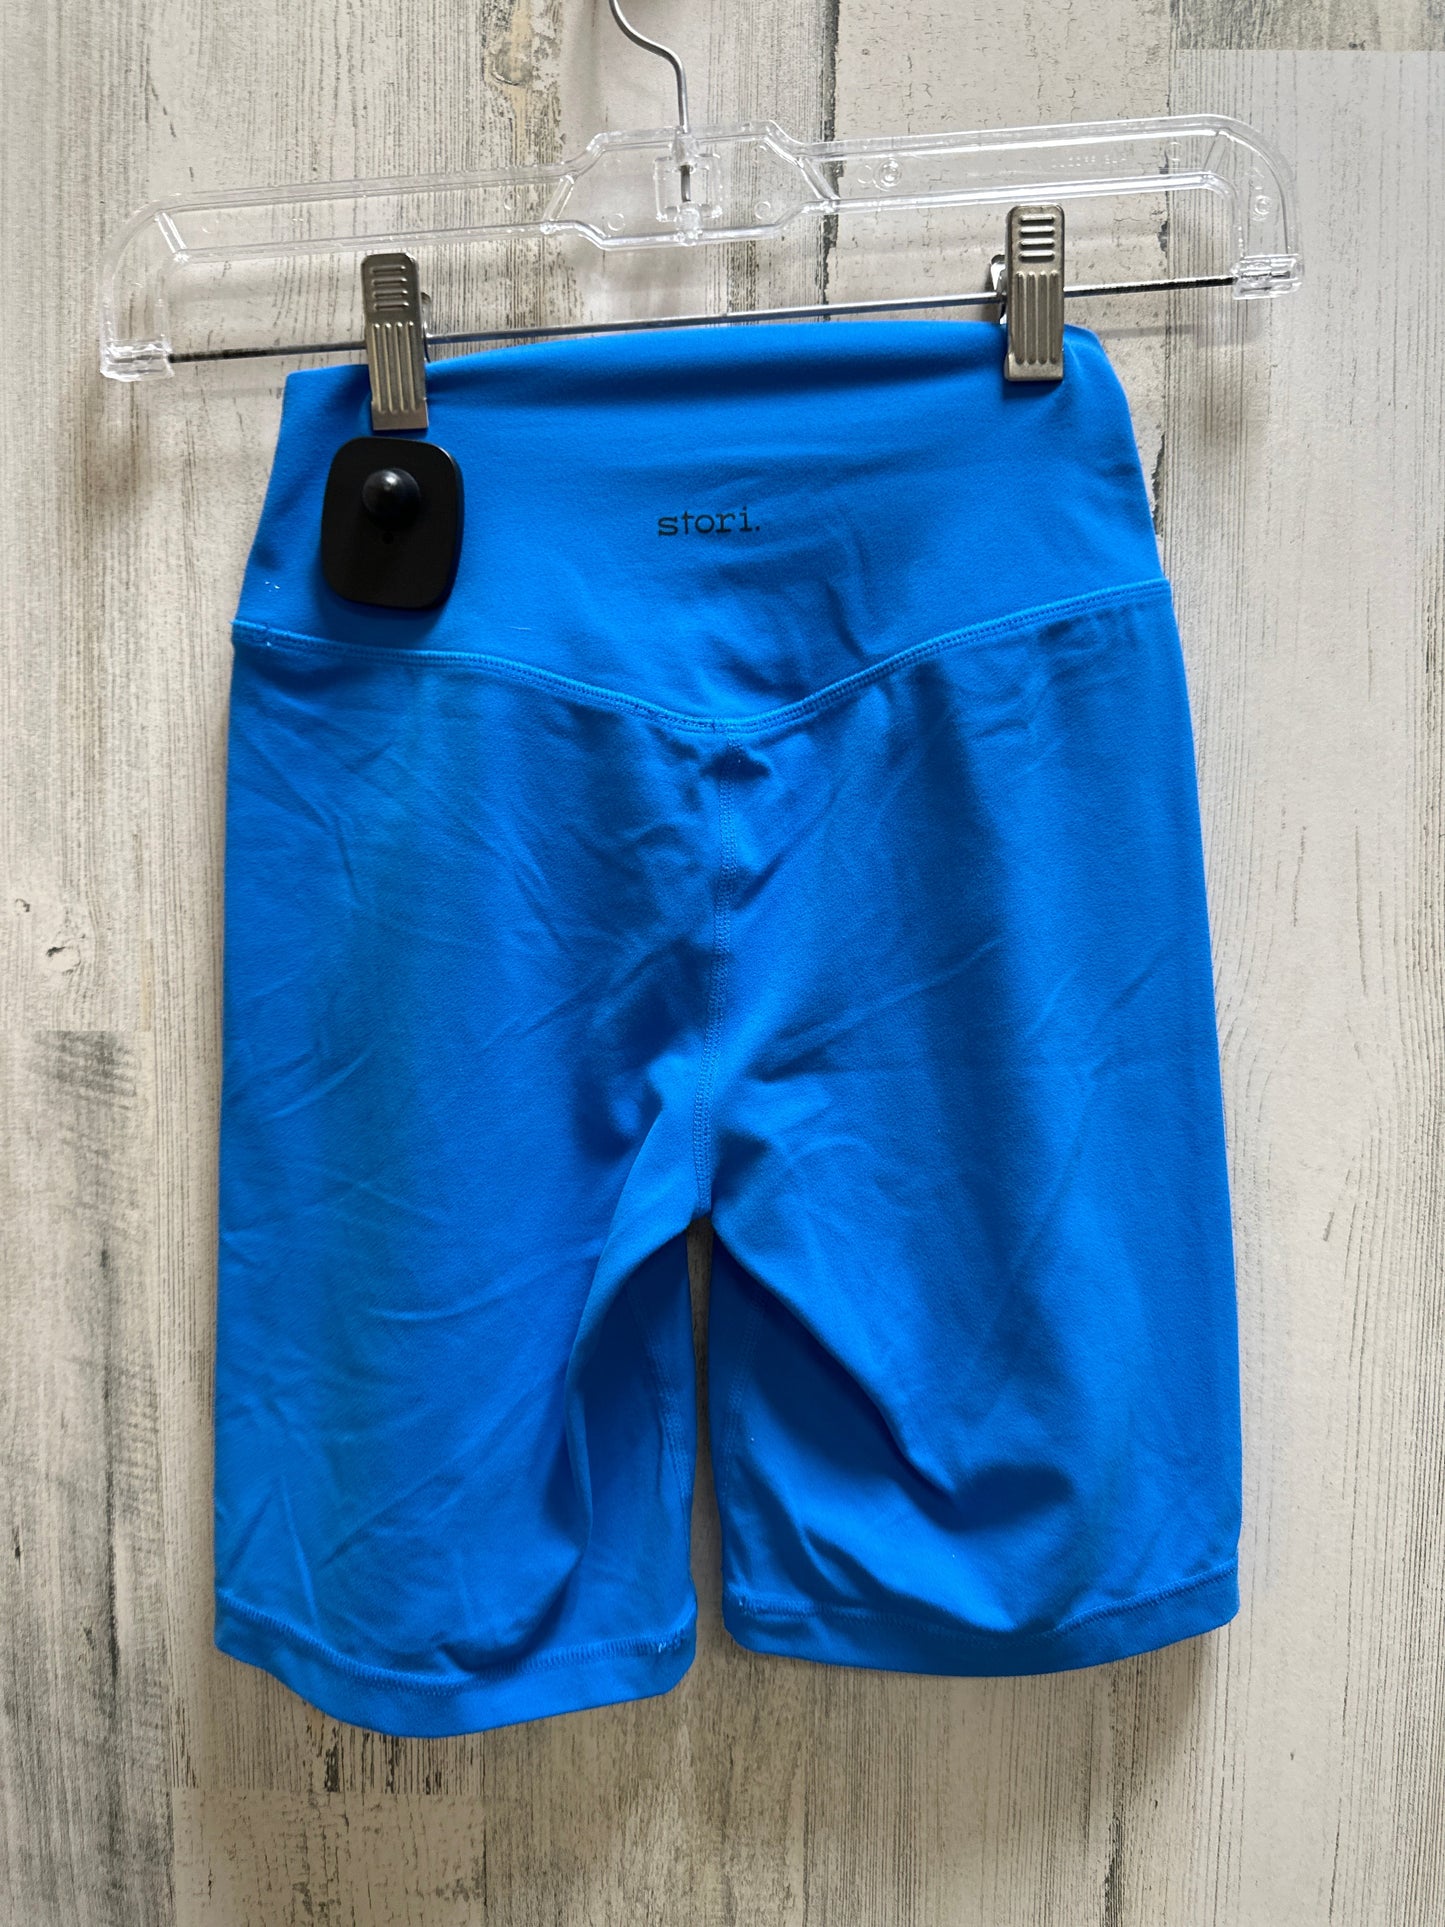 Blue Athletic Shorts Storia, Size 2